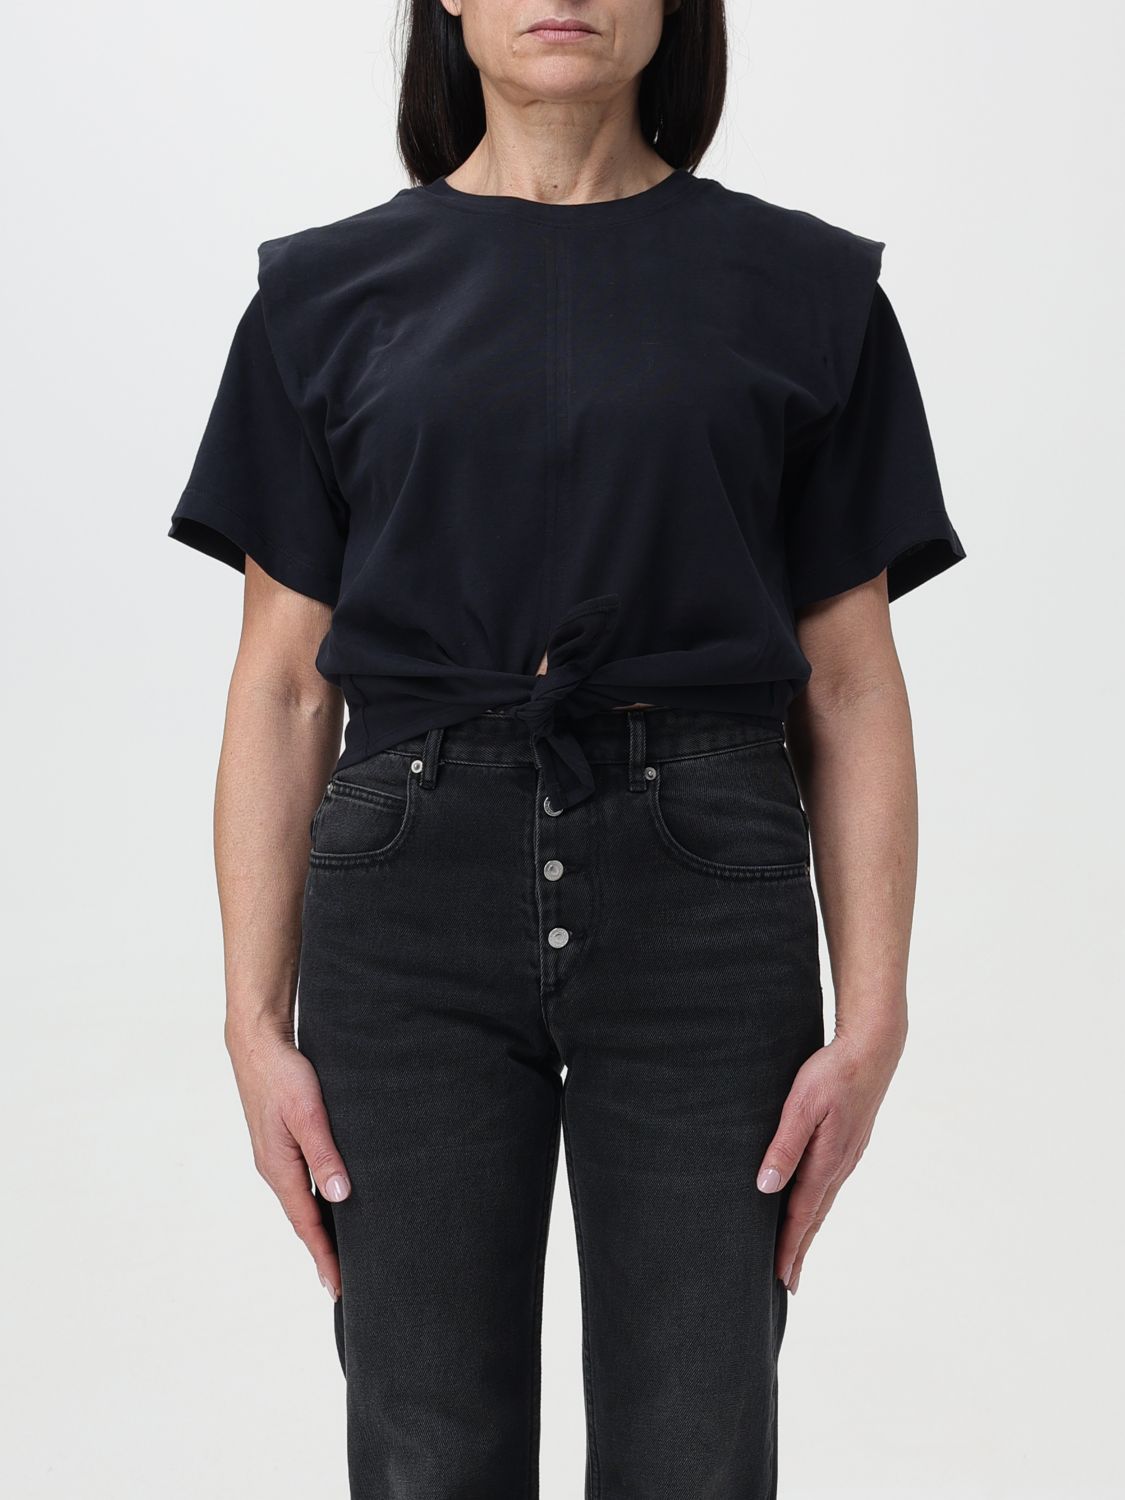 Isabel Marant T-shirt  Woman Color Black